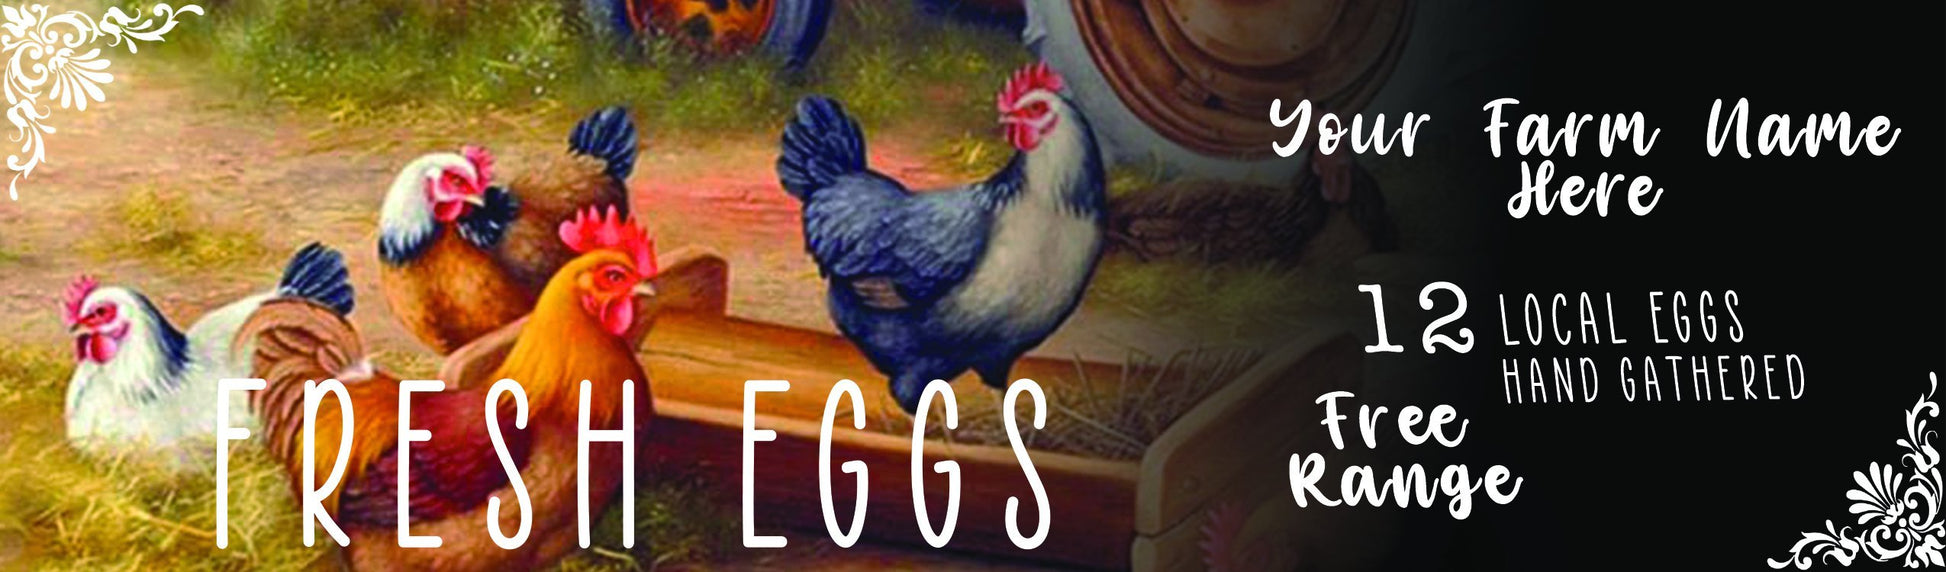 Custom Egg Carton Labels - FULL COLOR - Farmstead - Fresh Eggs from Happy Hens - For Full Dozen/12-egg Cartons Cedar Hill Country Market